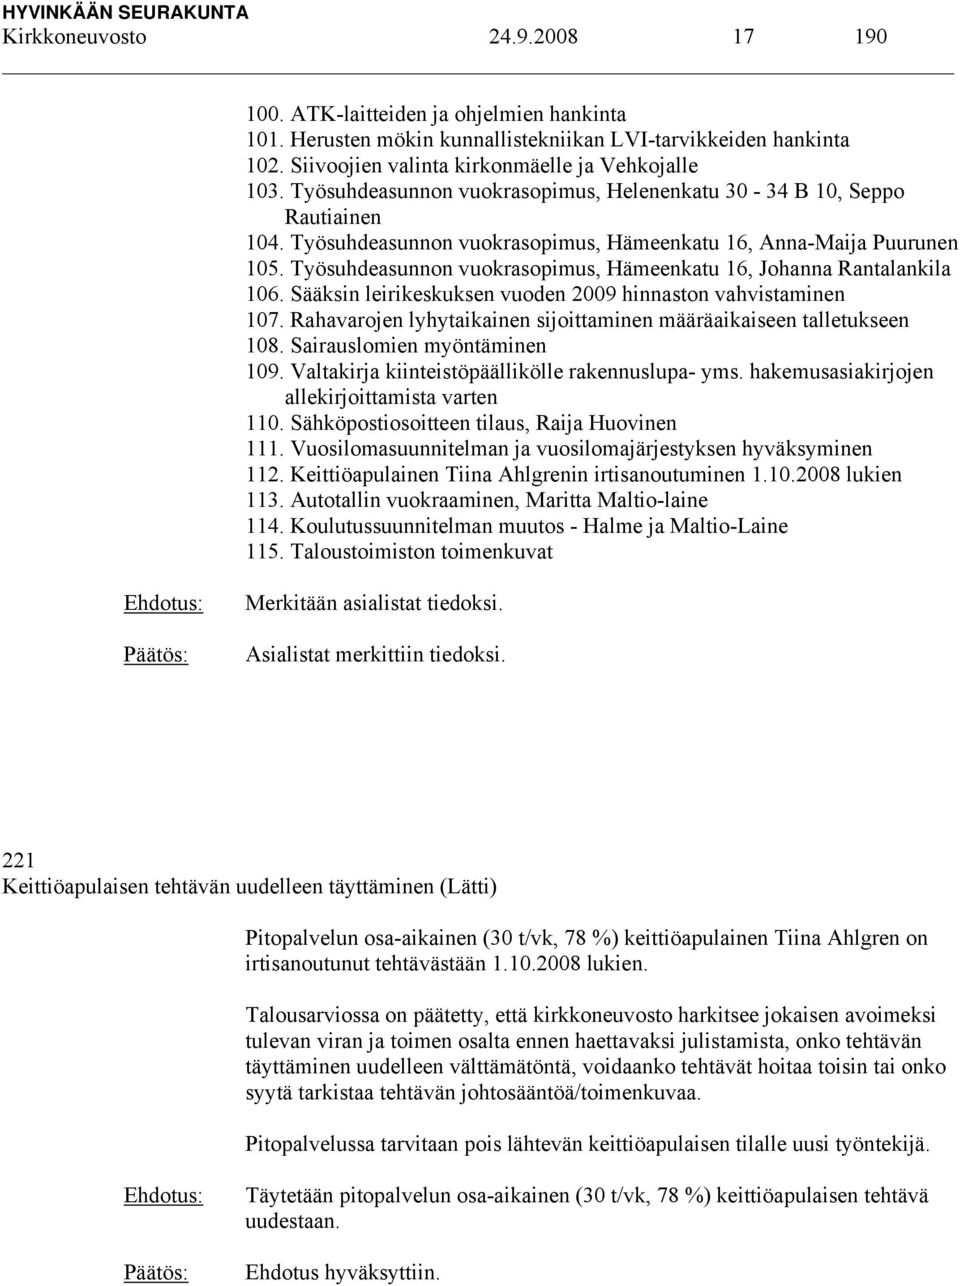 Työsuhdeasunnon vuokrasopimus, Hämeenkatu 16, Johanna Rantalankila 106. Sääksin leirikeskuksen vuoden 2009 hinnaston vahvistaminen 107.